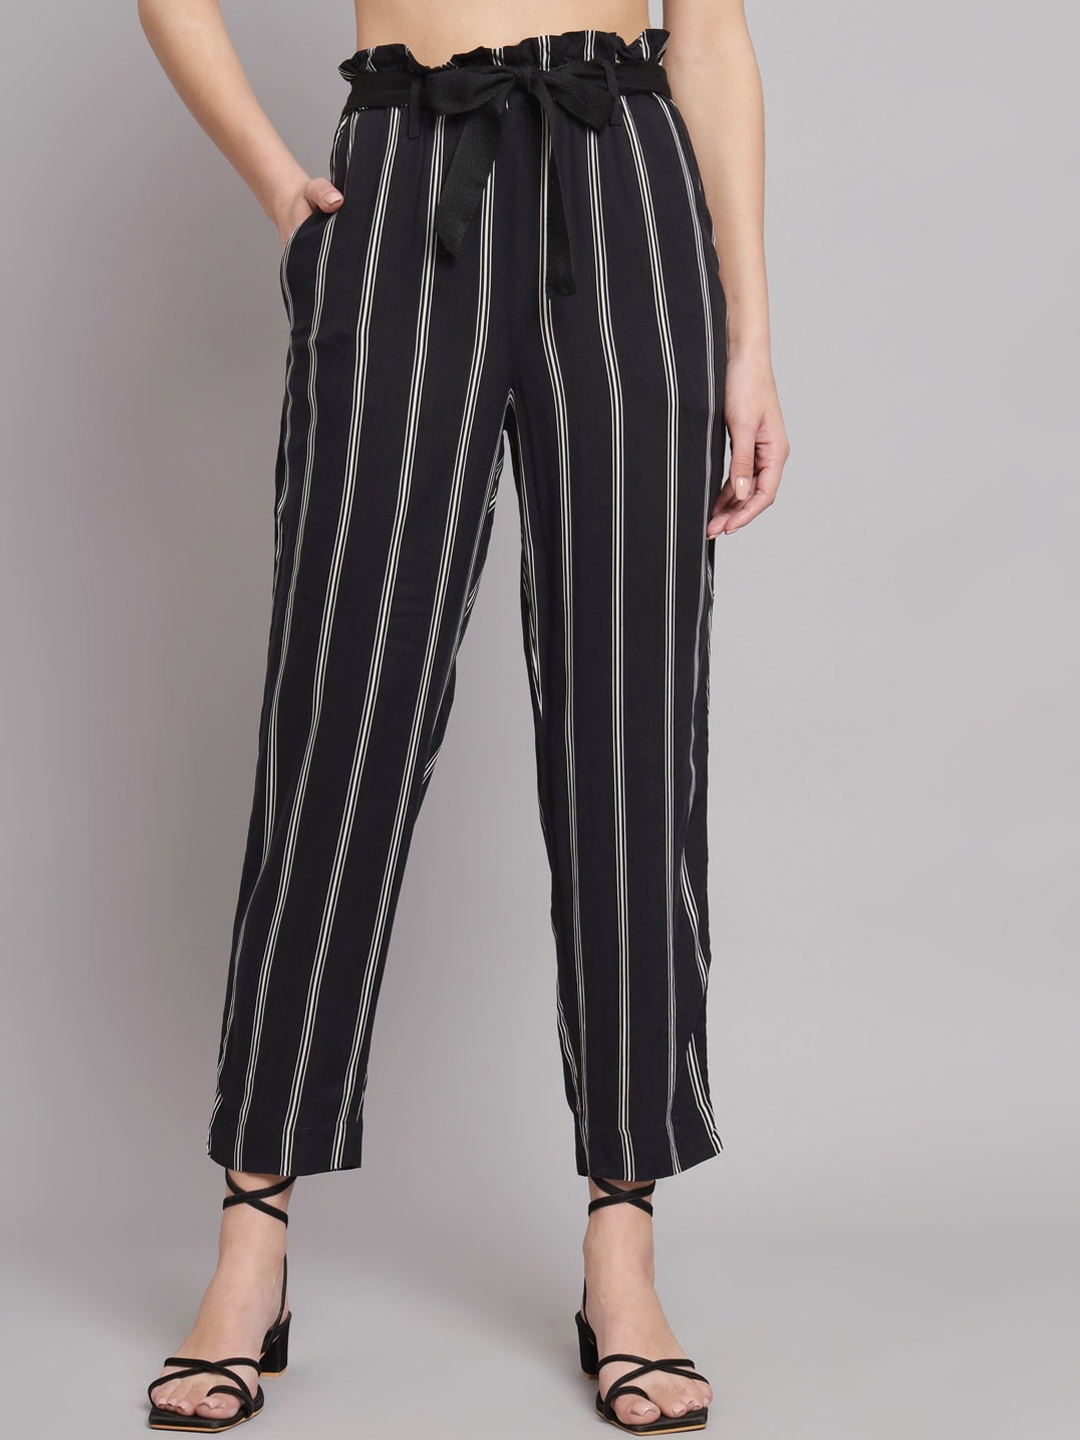 Buy NoBarr Women Striped Trousers - Trousers for Women 23438030 | Myntra